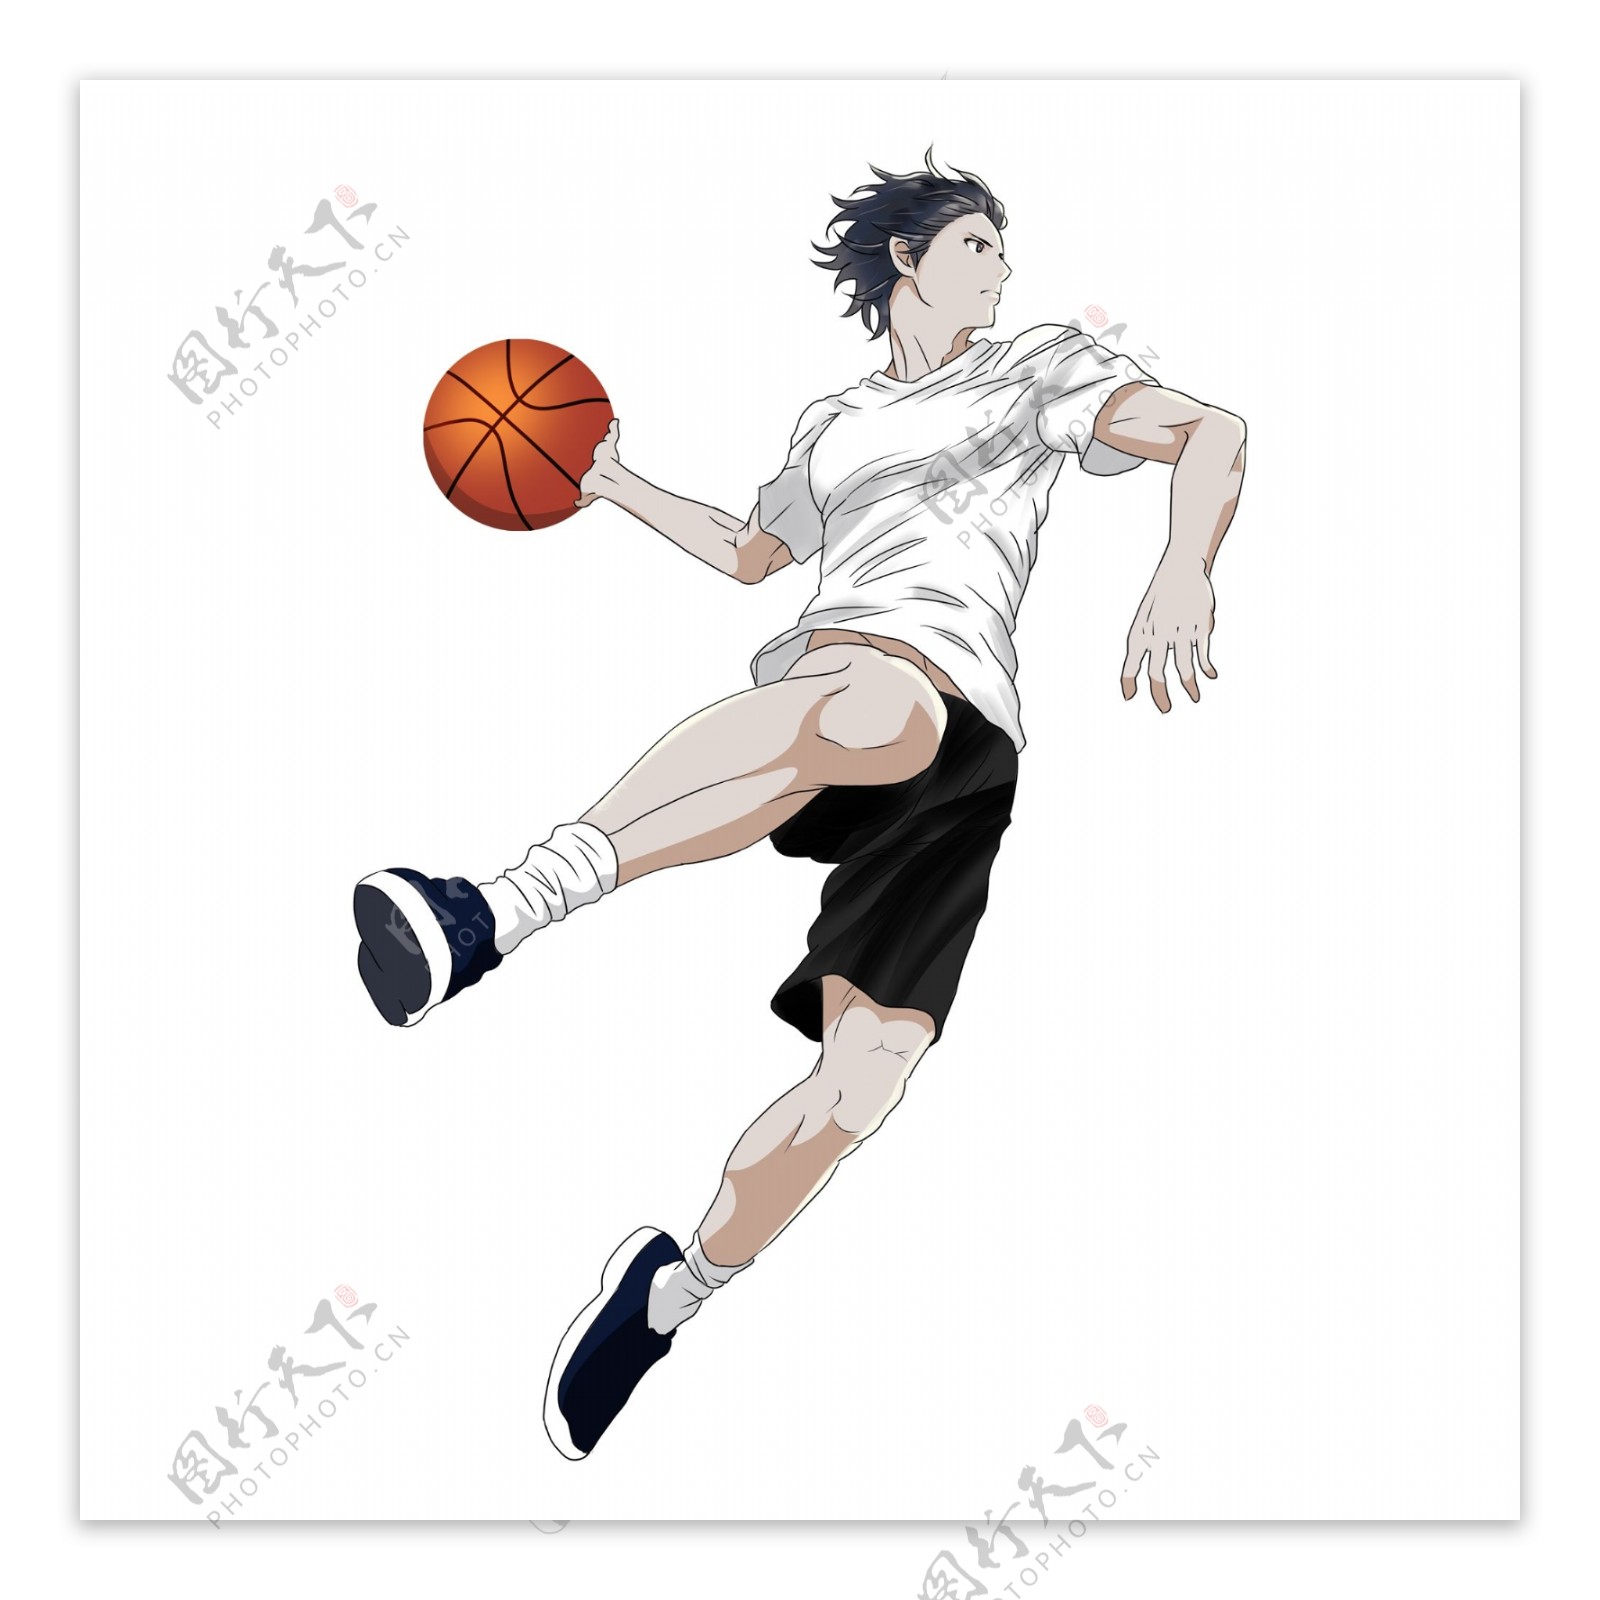 打篮球的阳光男孩手绘人物设计